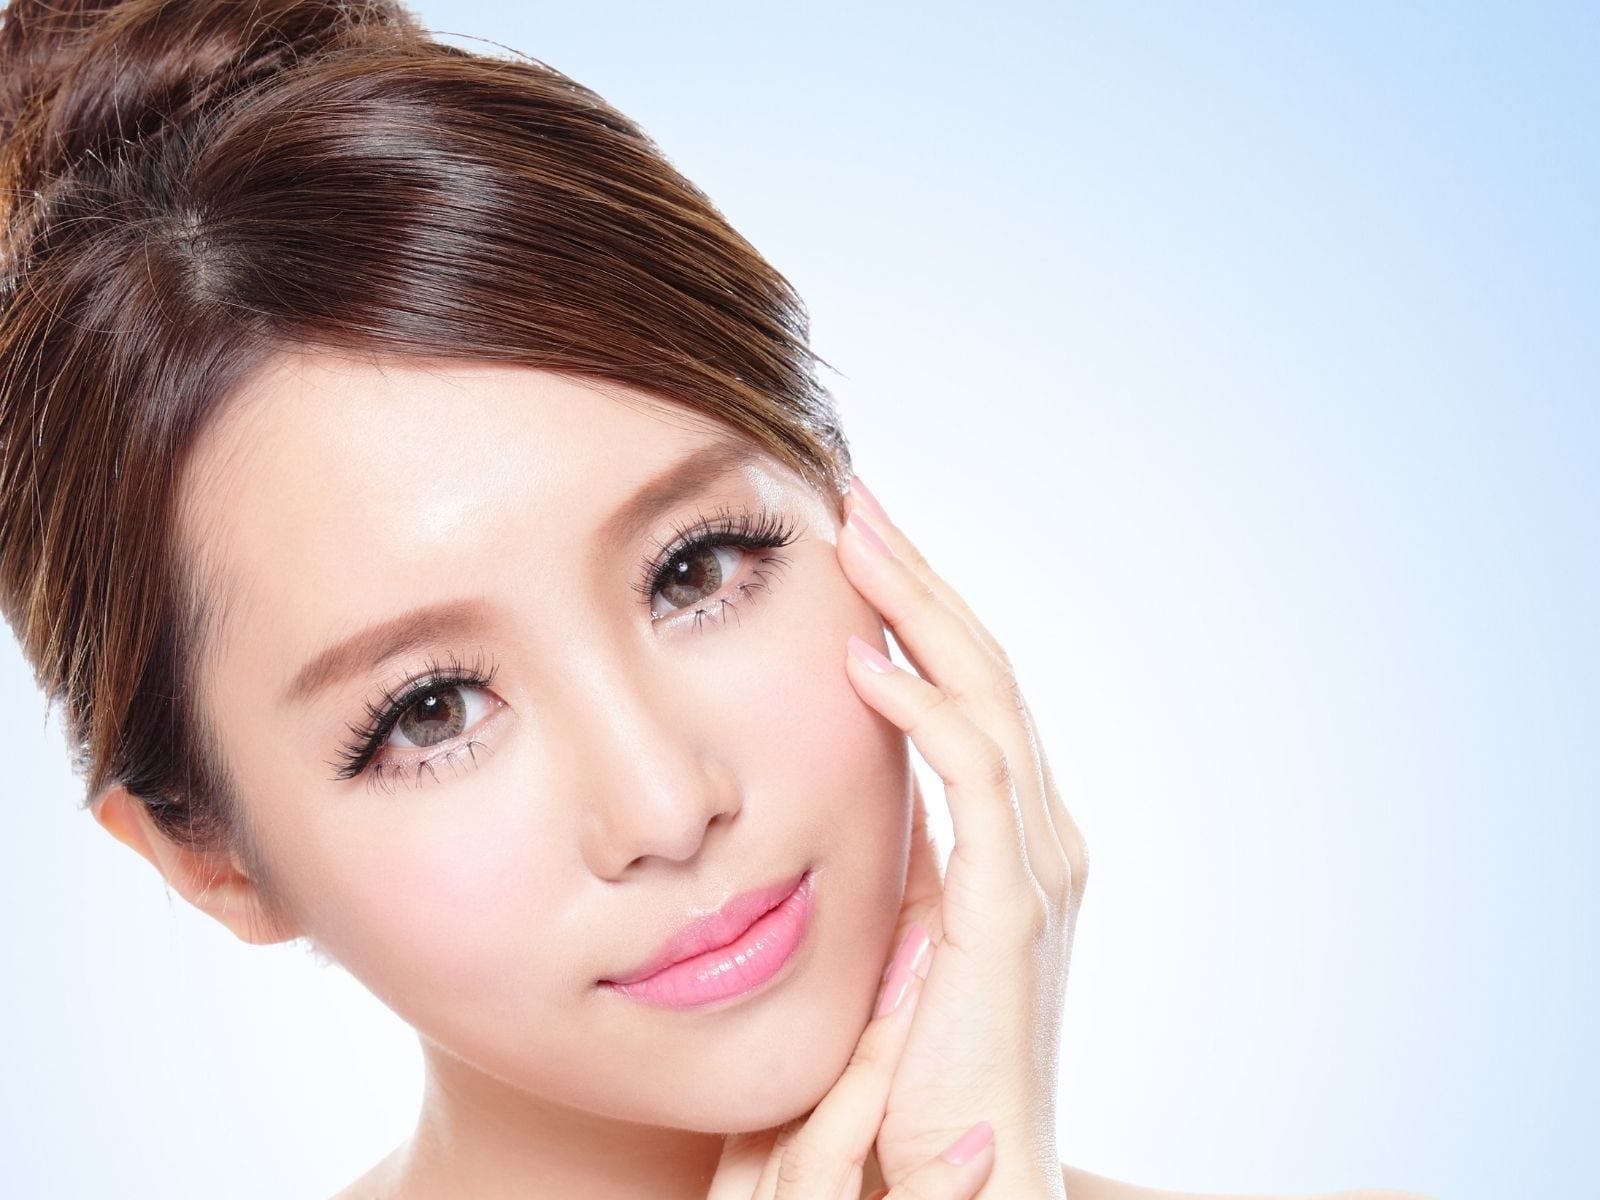 Korean Makeup Hacks Know what is jamsu technique For matte finish look pra - सिंपल तरीके से मैट मेकअप लुक पाने के लिए अपनाएं ये Korean Jamsu Beauty Hacks, जानें क्‍या है ये तकनीक – News18 हिंदी